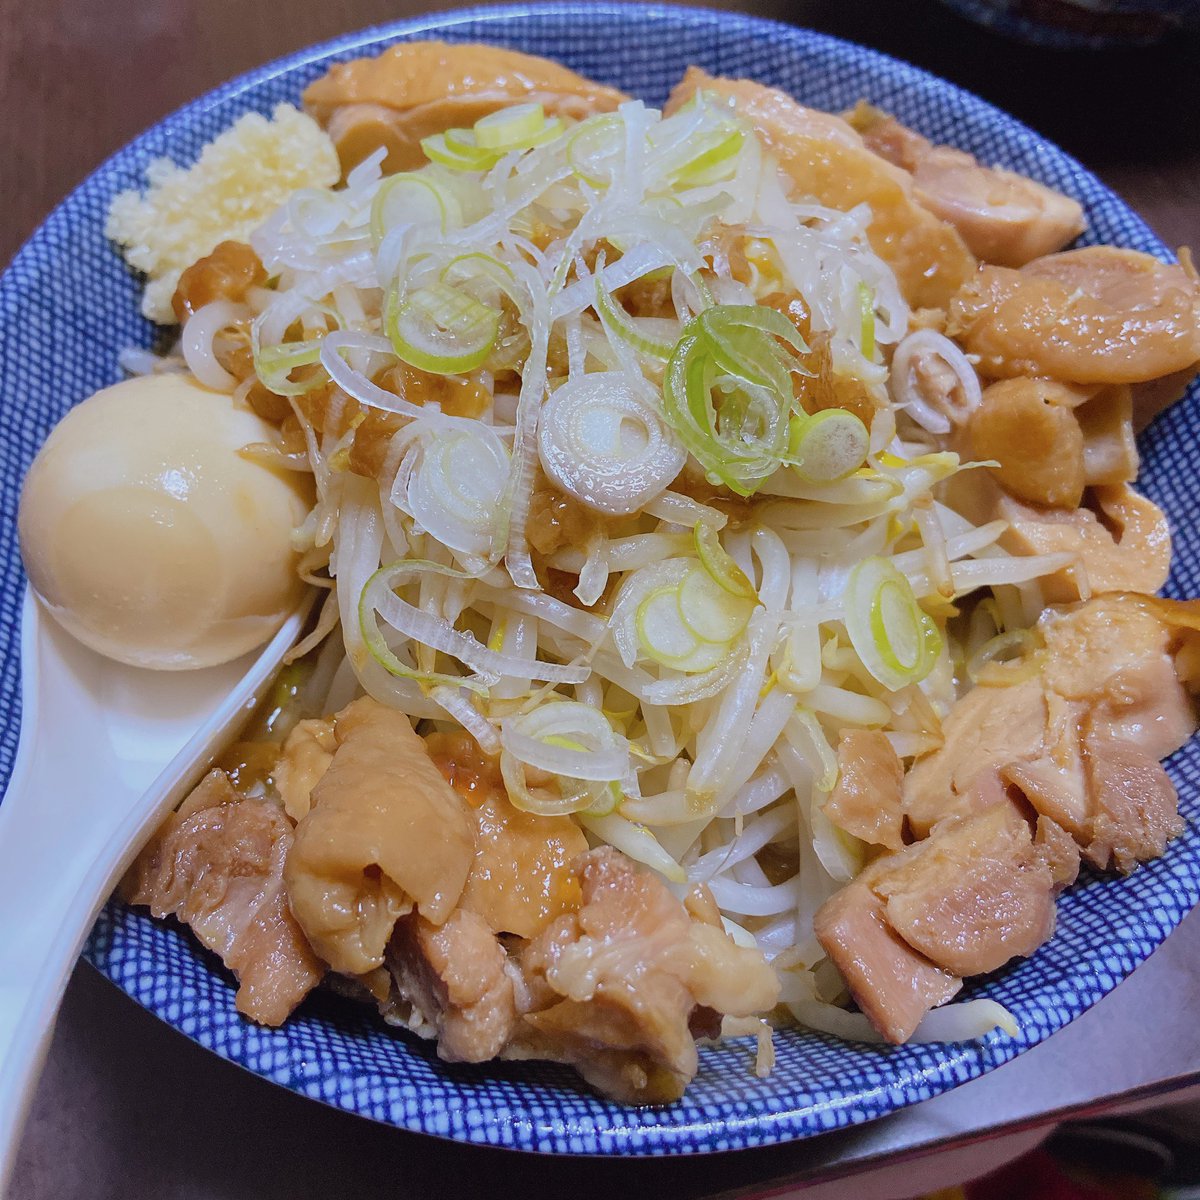 test ツイッターメディア - 花の名さんの鍋二郎🌸

夫婦共々、佐久市で
1番美味しいラーメンだと思ってる🍜

チャーシューは鶏肉で自作してみた🥺 https://t.co/IxwNU23FKA